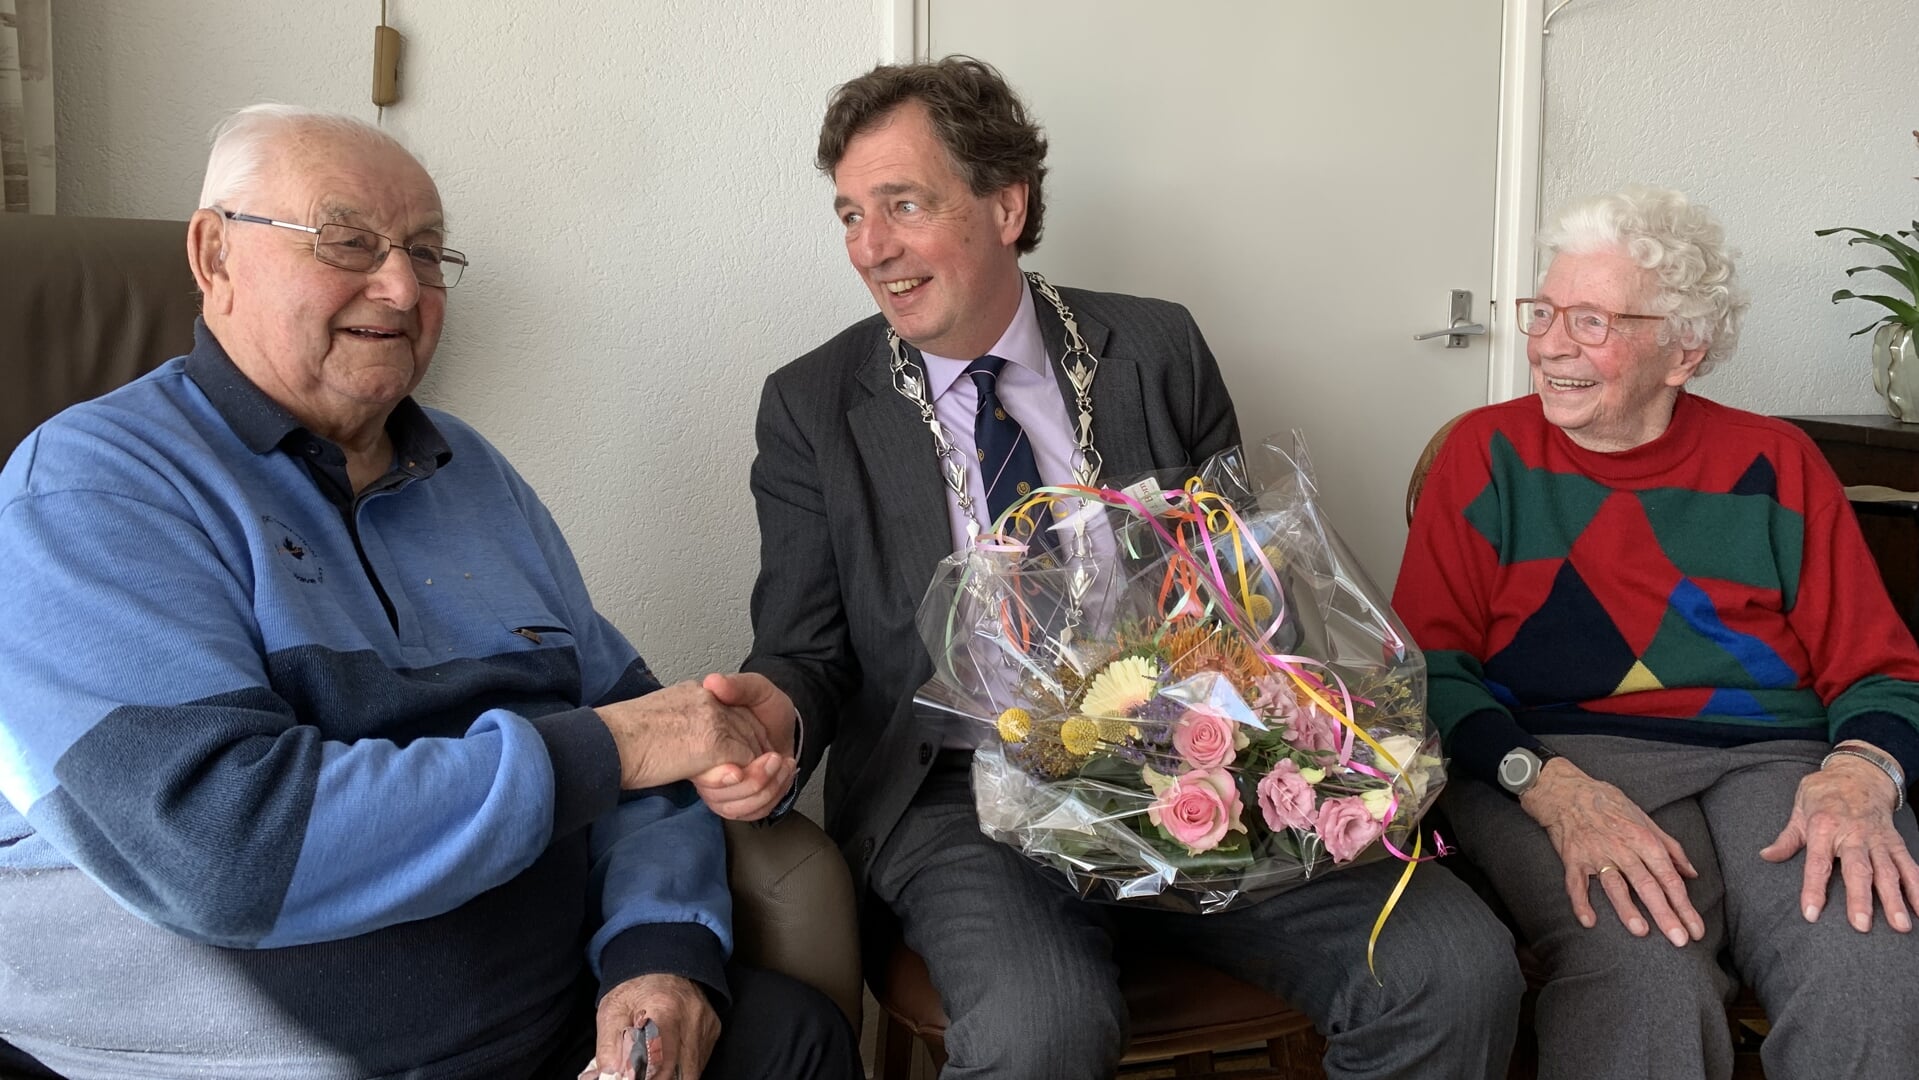 Burgemeester Verhulst feliciteert Gerrit (93) en Antje (90) met hun 65-jarig jubileum.